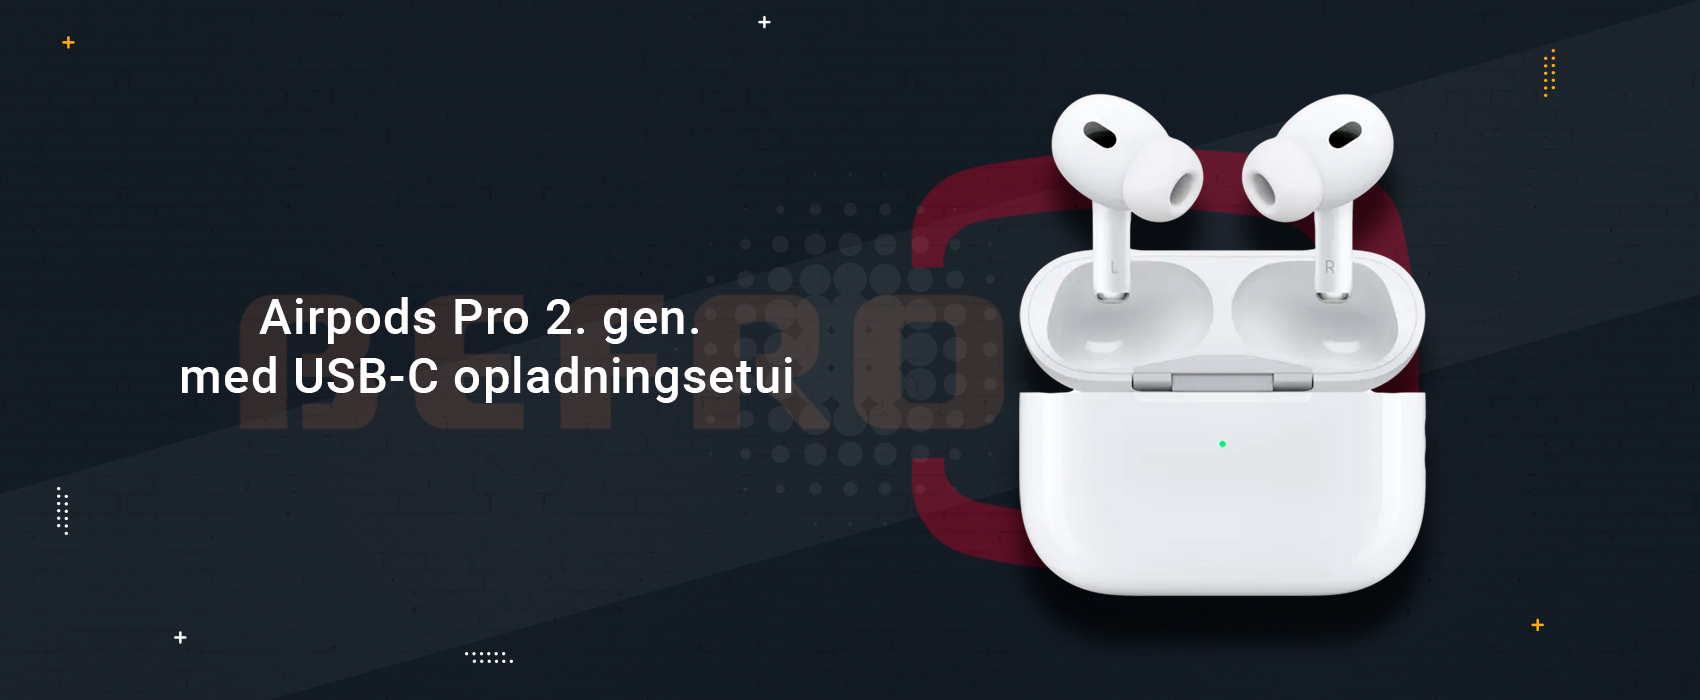 Oplev trdls frihed: Apple AirPods Pro 2nd Generation med MagSafe Opladning (USB-C)